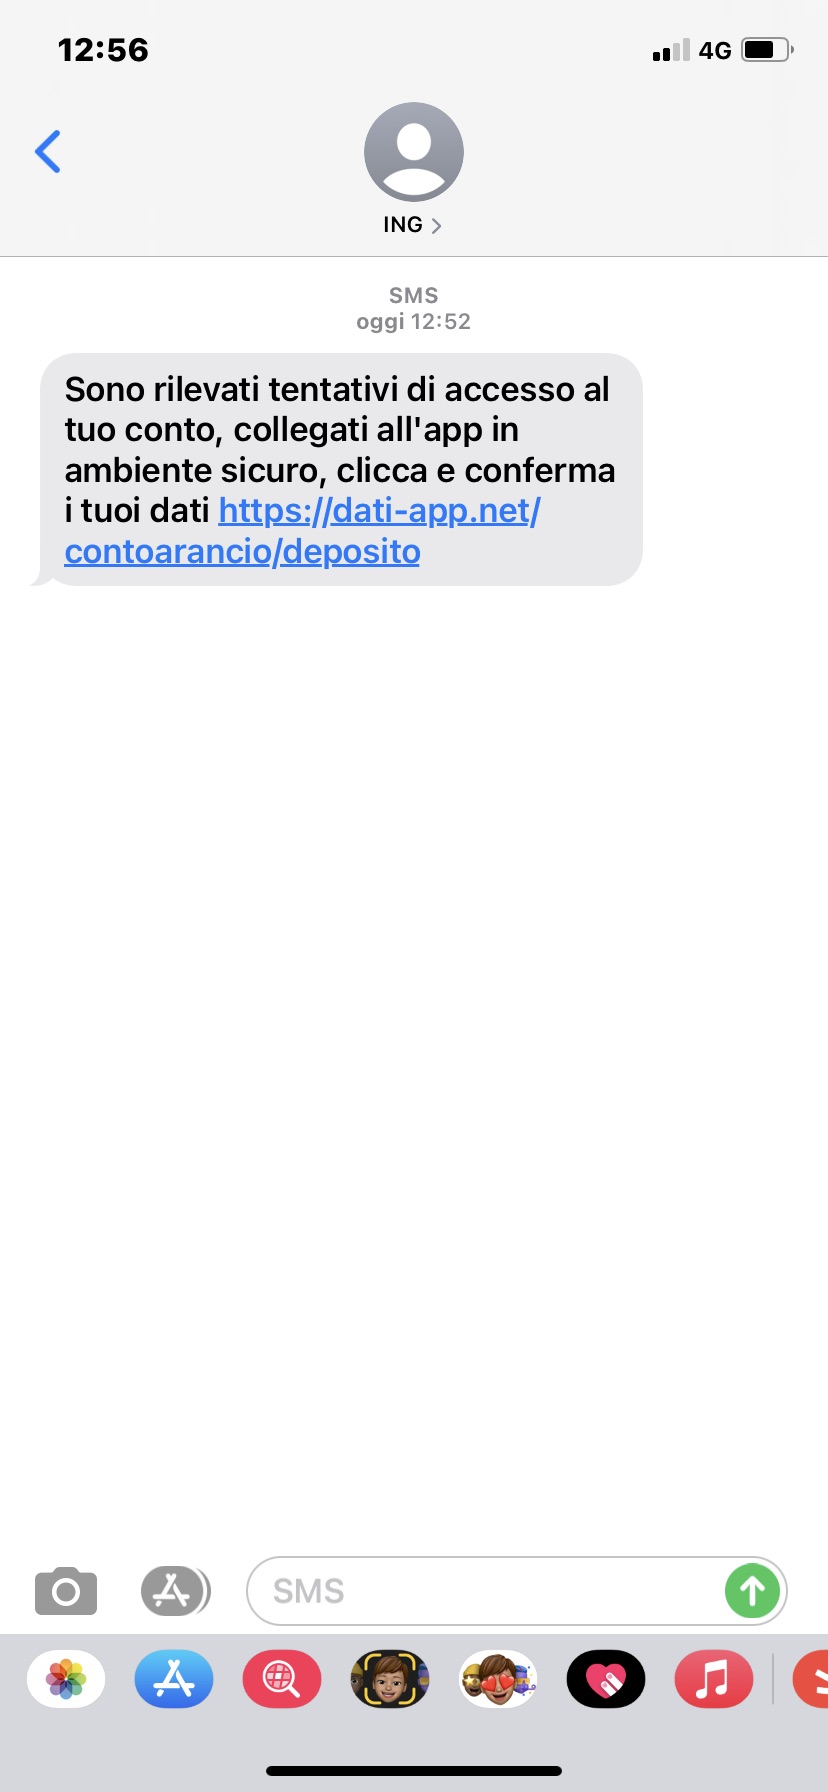 Clicca per ingrandire l'immagine del falso sms che informa che è stato rilevato un tentativo di accesso al conto corrente di ING Direct...ma in realtà si tratta di una TRUFFA!